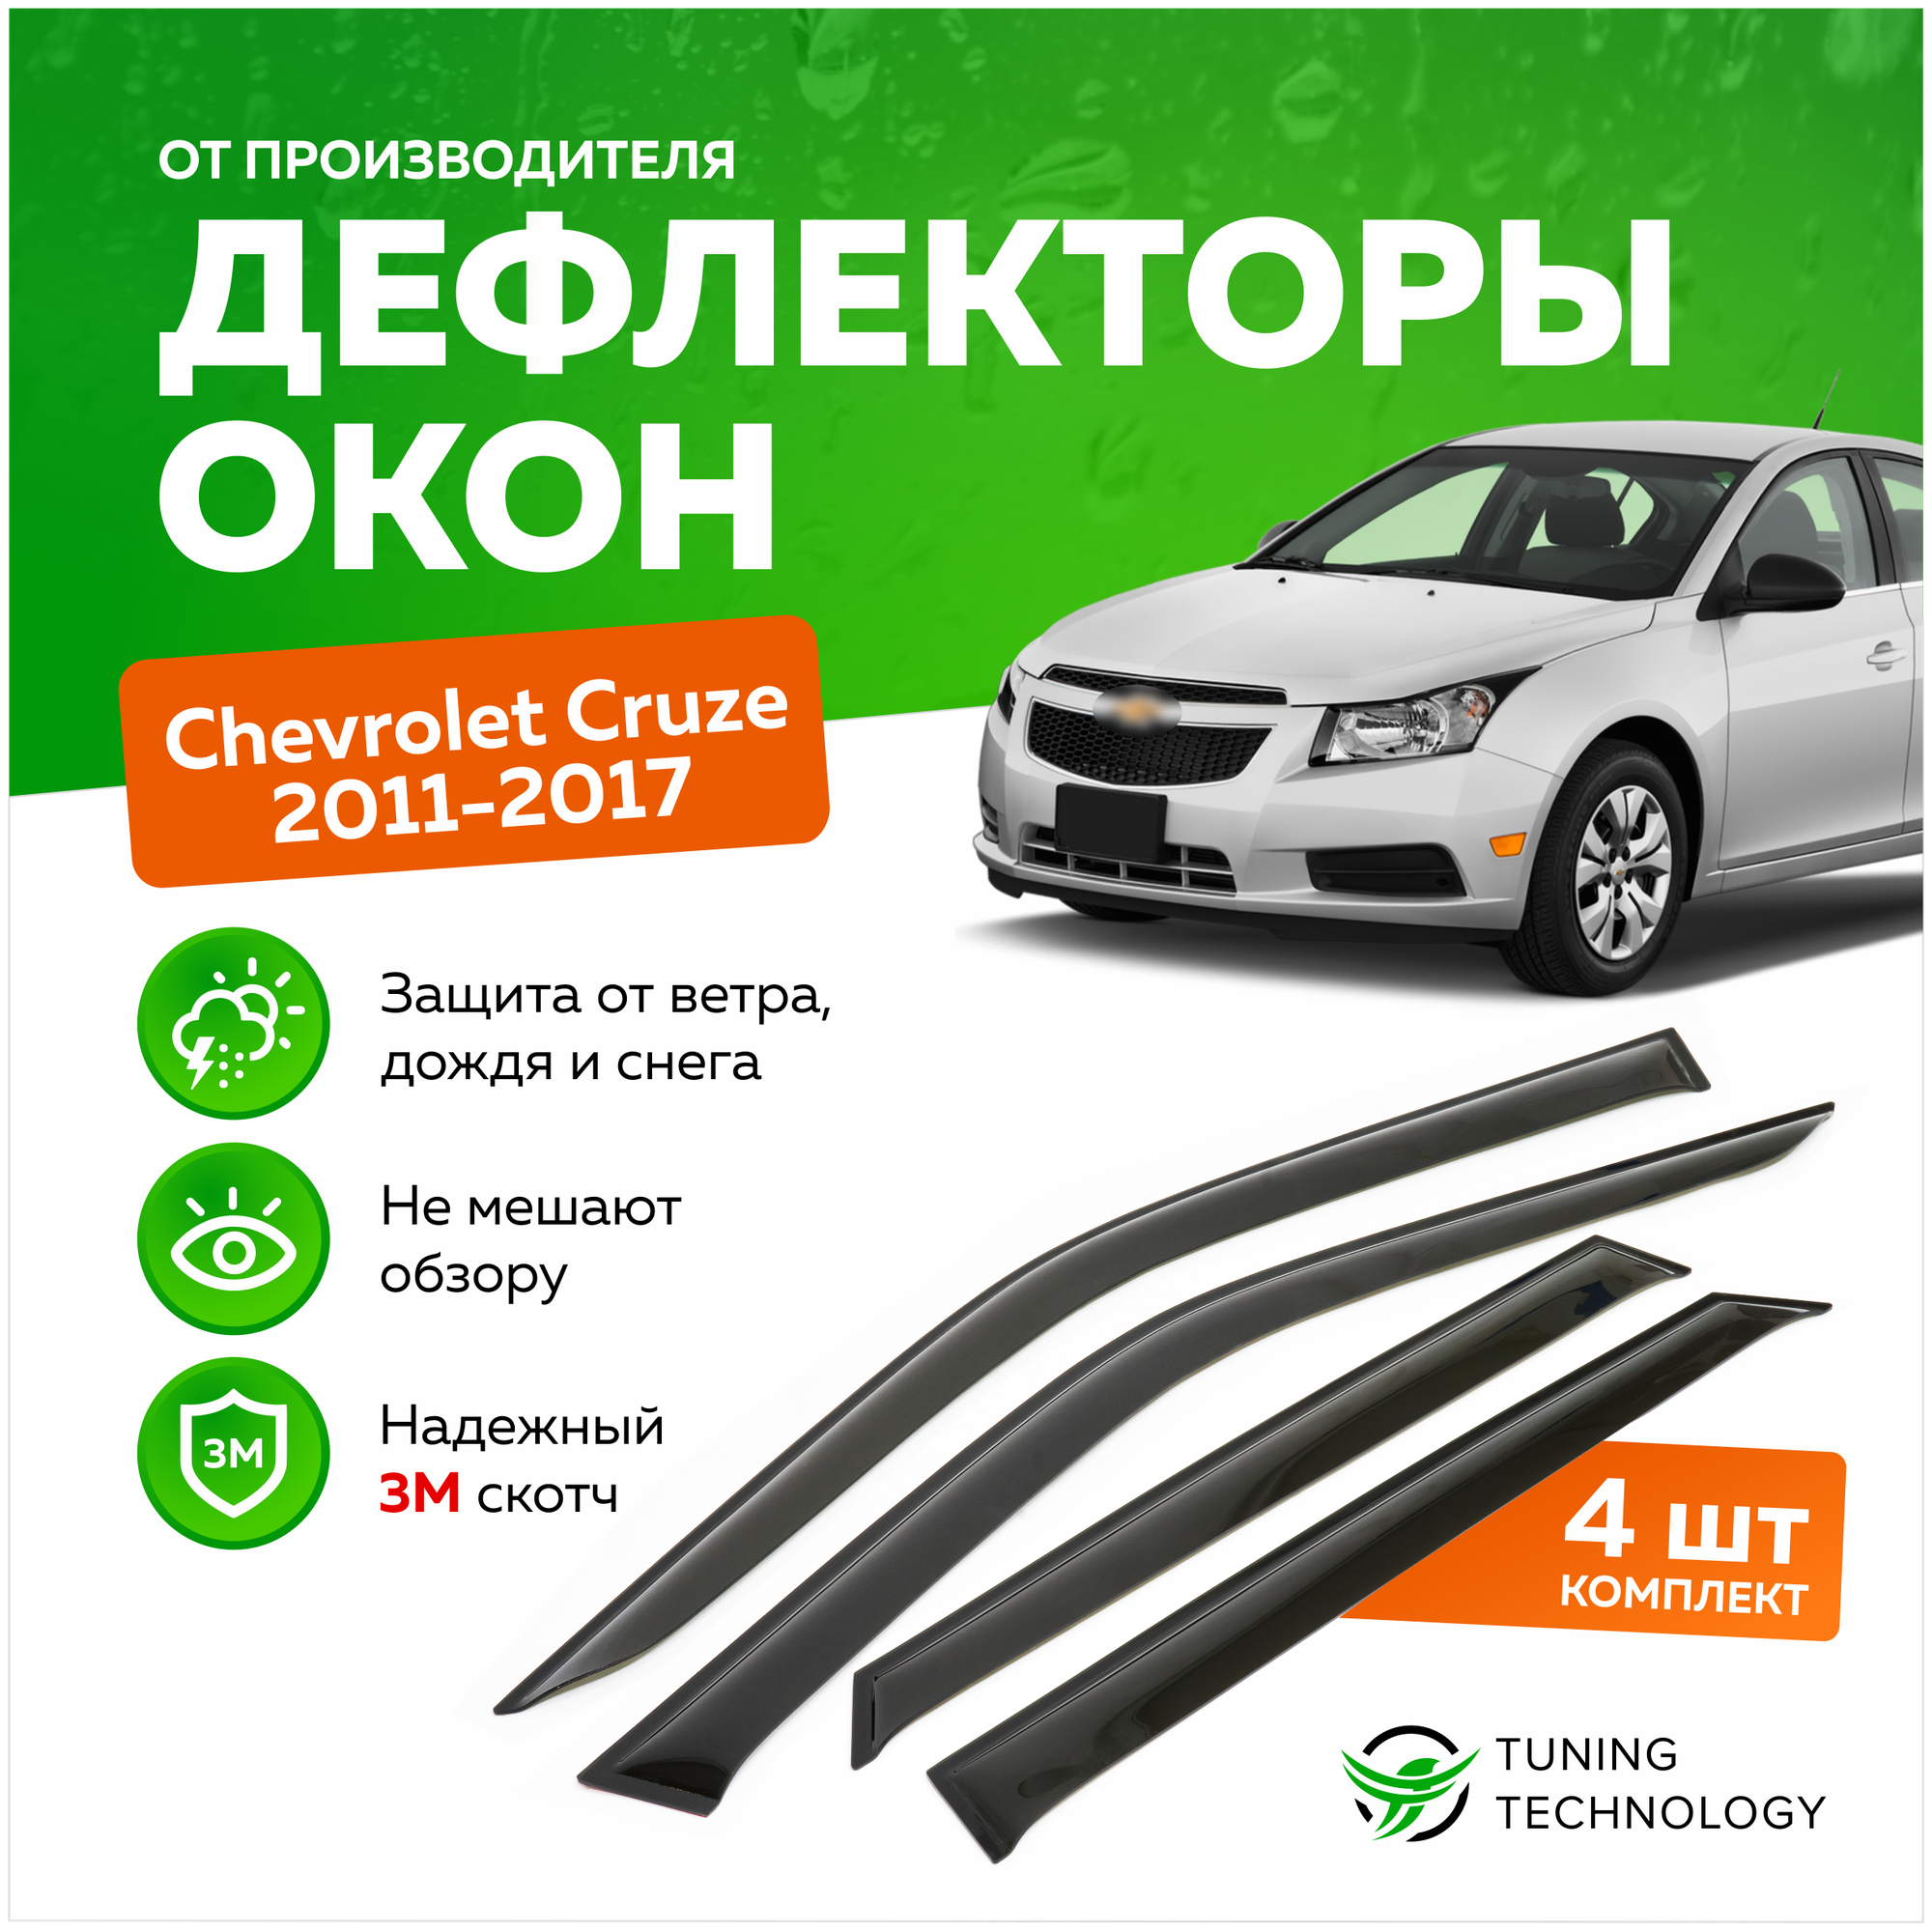 Дефлекторы боковых окон Chevrolet Cruze (Шевроле Круз) хэтчбек 2011-2017, ветровики на двери автомобиля, ТТ